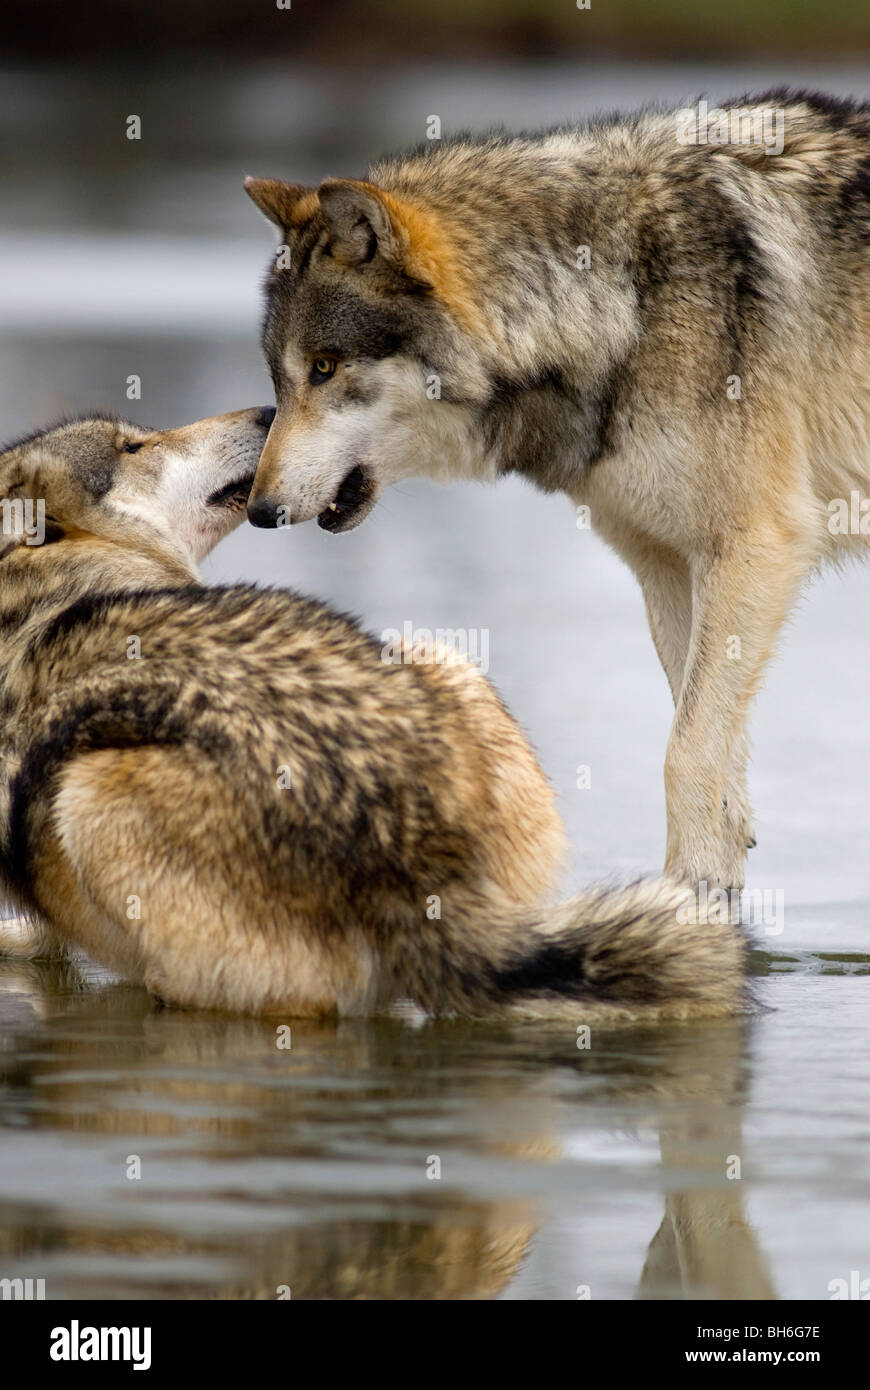 Ovviamente uno di questi lupi è sottomesso e questa è stata scattata durante un alterco tra i due lupi. Foto Stock